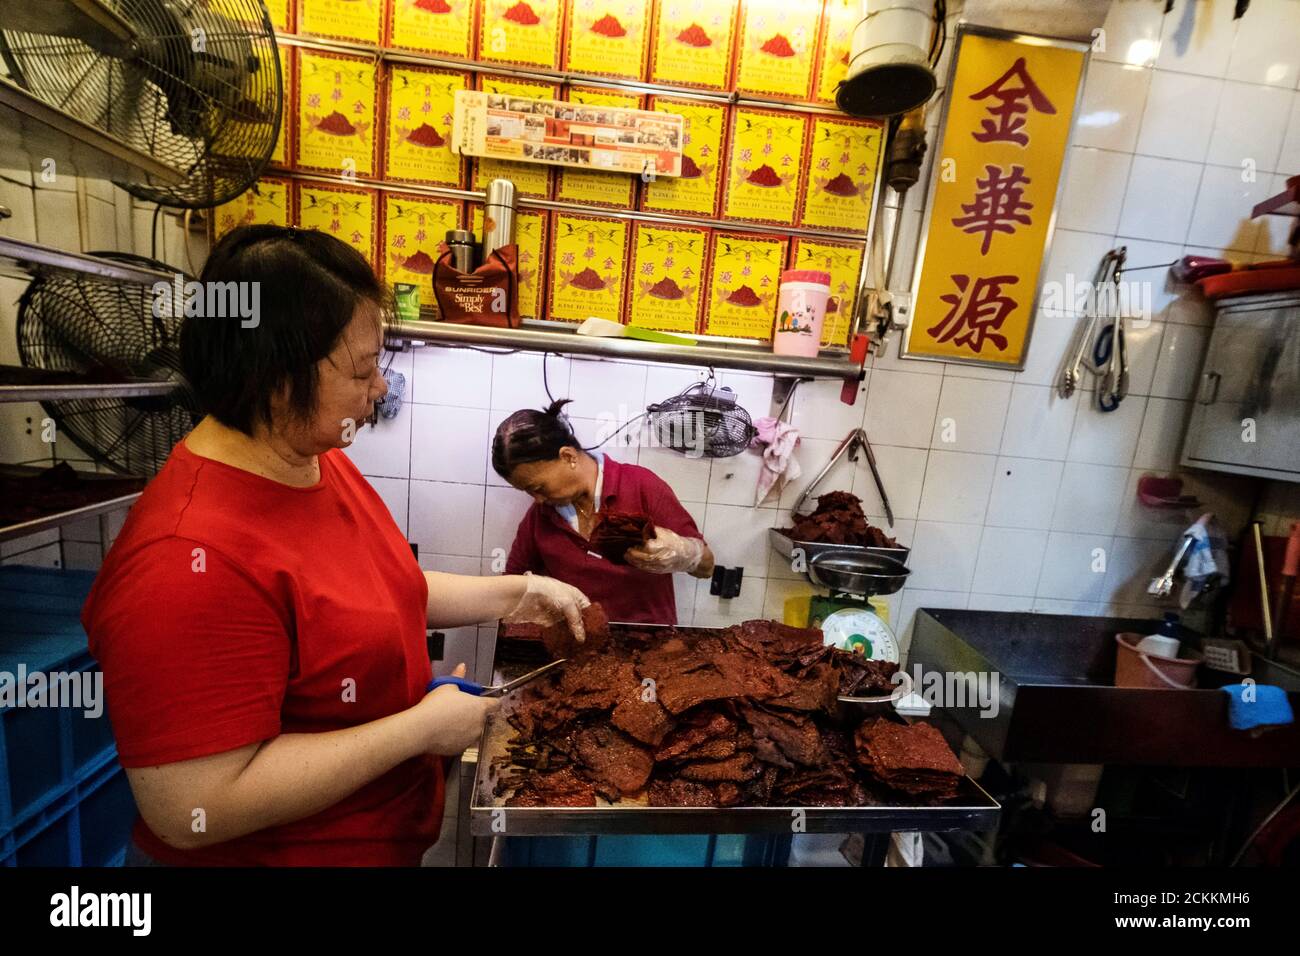 Mitarbeiter trimmen verkohlte Kanten von Bak Kwa, einem traditionellen  südchinesischen Schweinekotelett, das bei den singapurischen Chinesen für  die Neujahrsfeier beliebt ist, am Hawker-Stand des Familienunternehmens Bak  Kwa-Herstellers Kim Hua Guan im ...